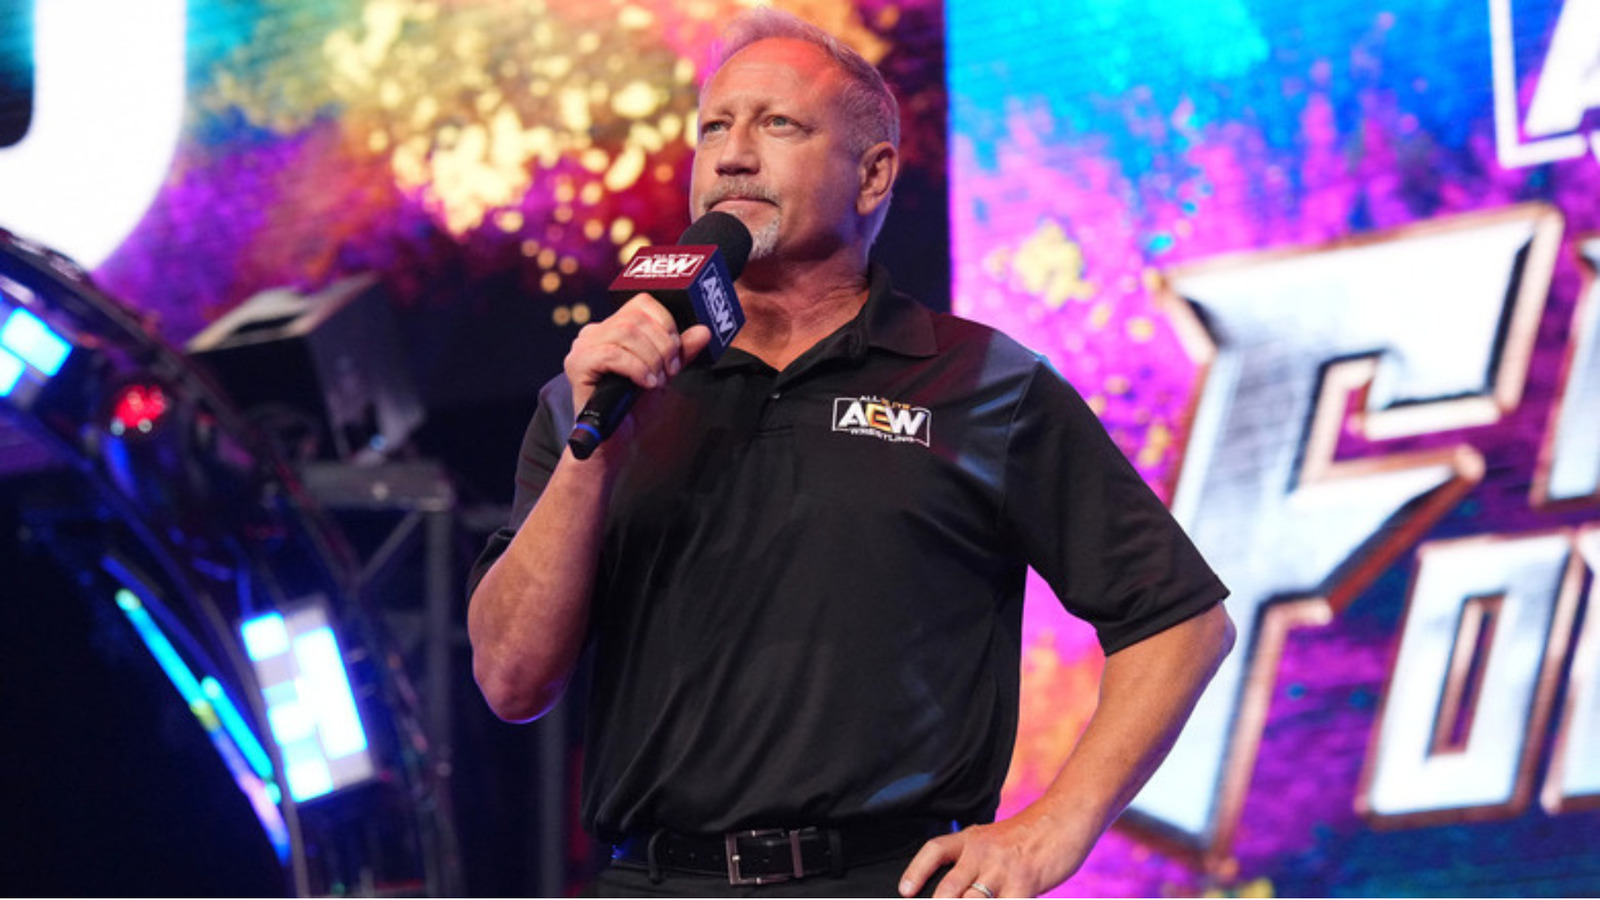 Jerry Lynn de AEW recuerda haber pensado que nunca trabajaría para ECW mientras estaba en WCW